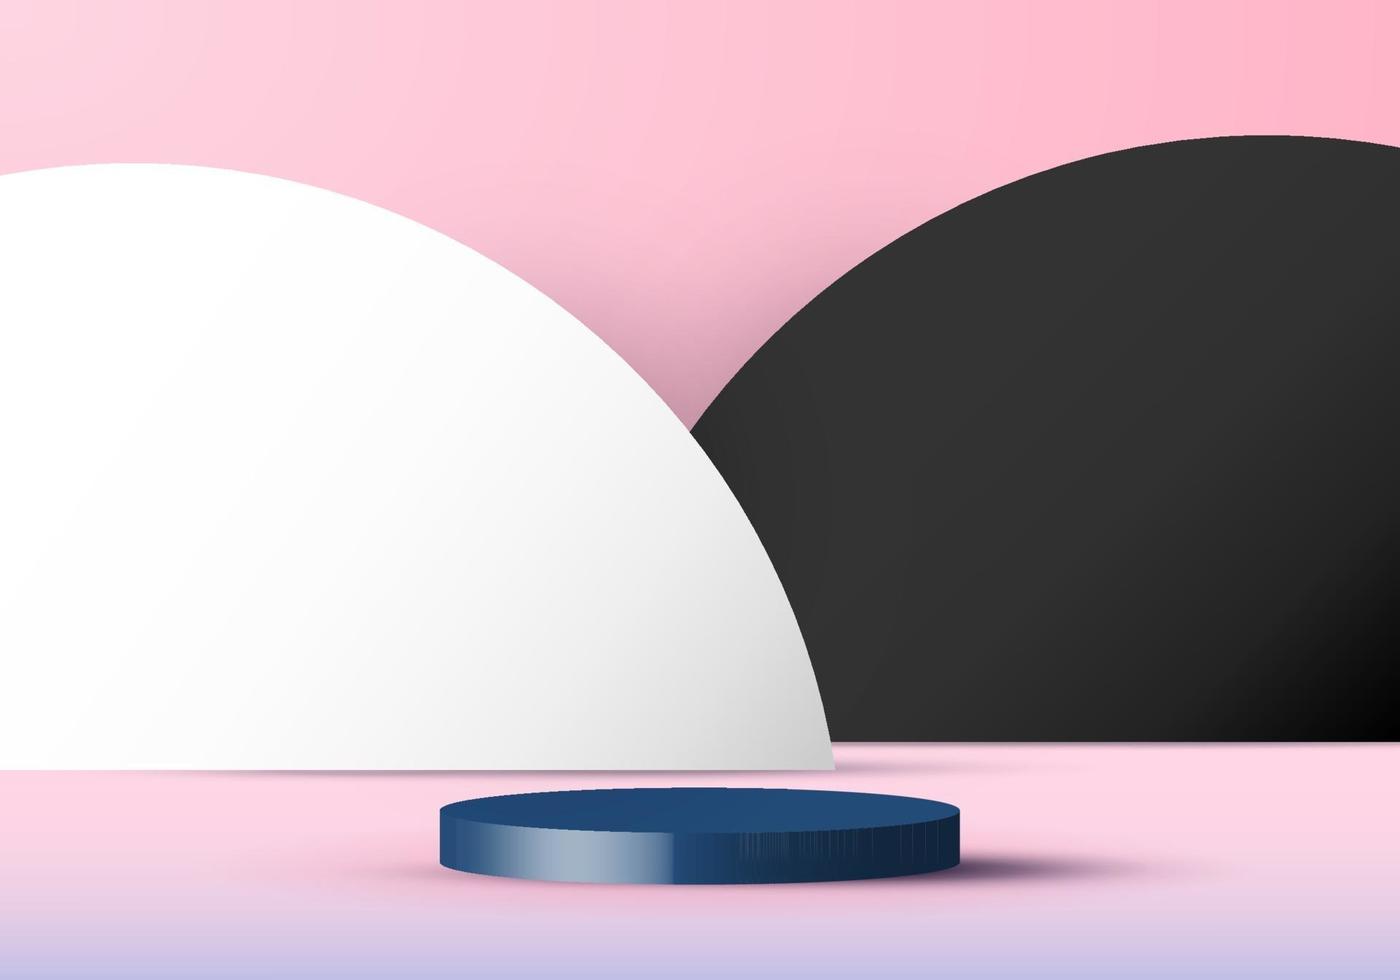 Bakgrund för rosa färg 3d med den vita cylindernpallen och stilen för papper för svartvit cirkelbakgrund vektor